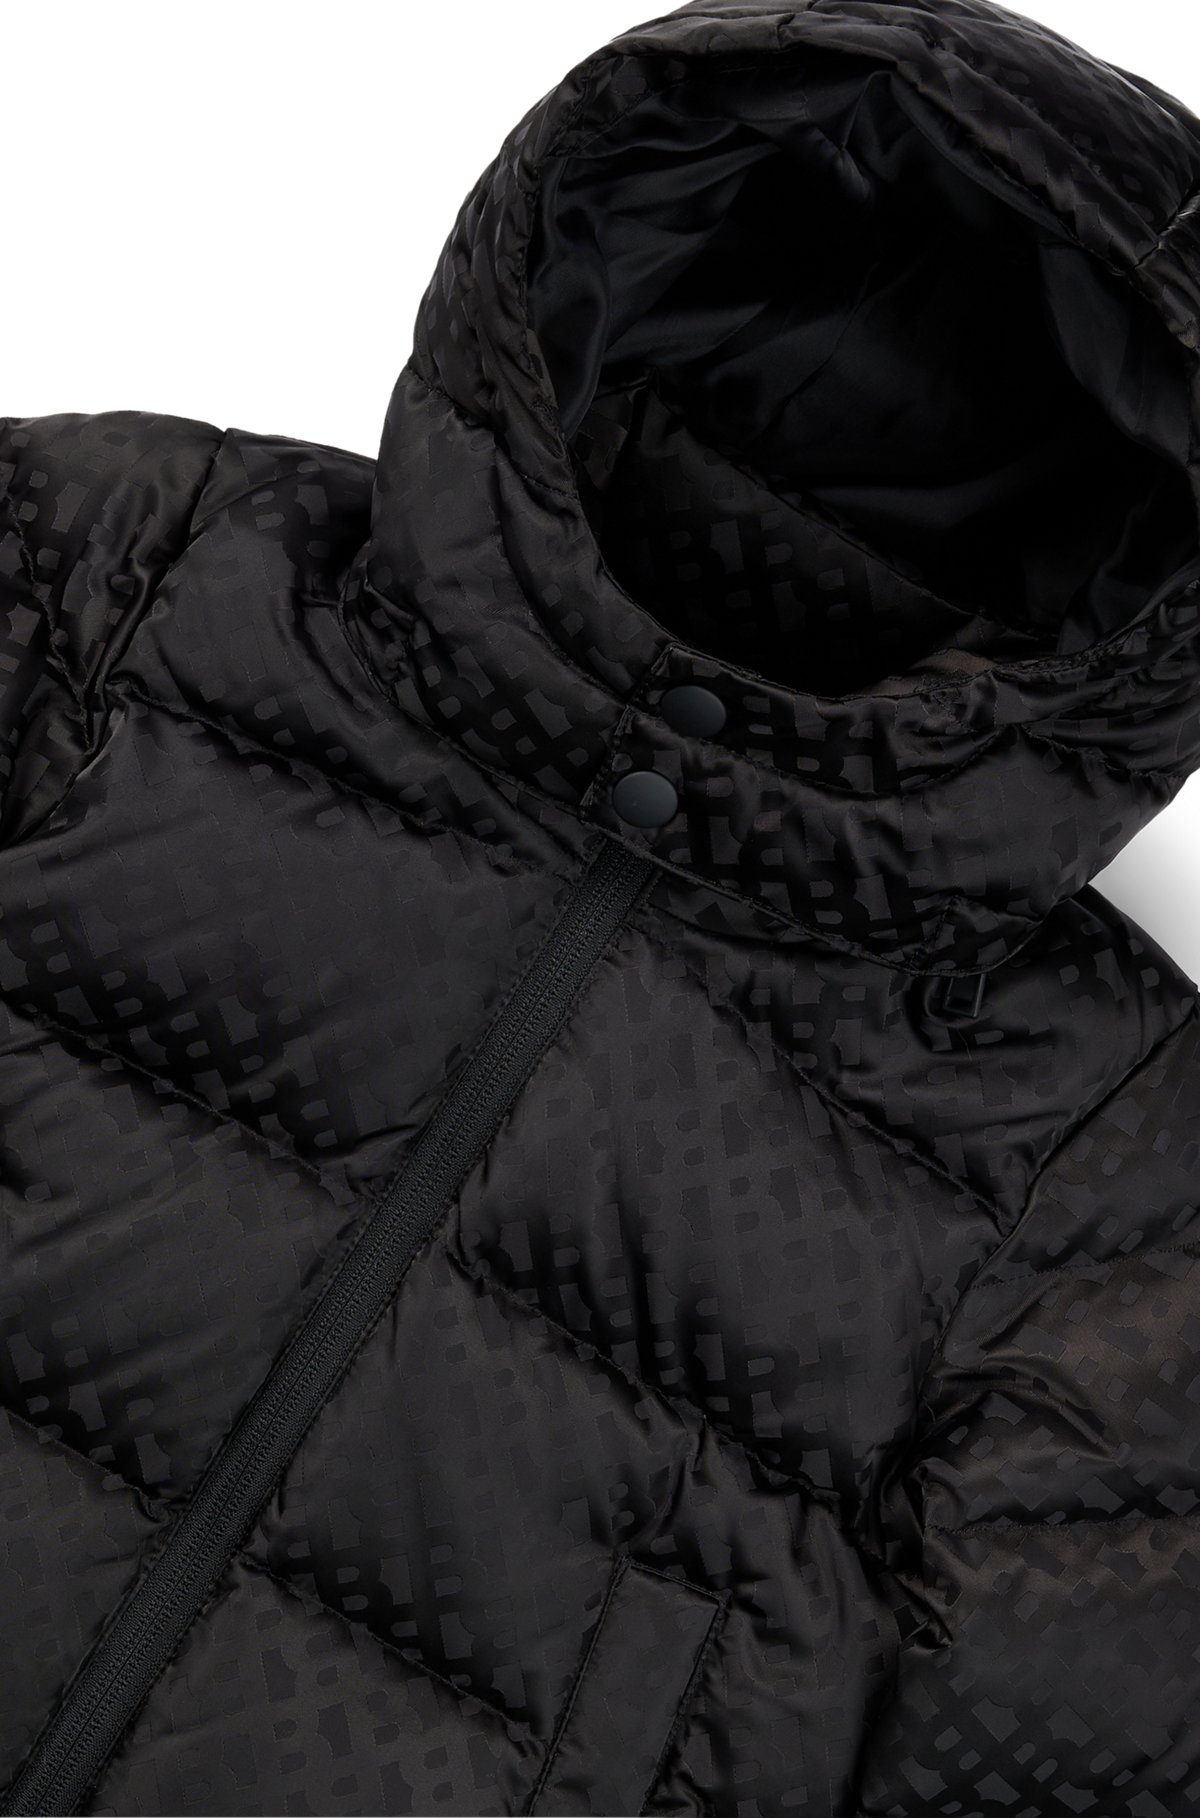 키즈 모노그램 패턴 소재 후드 재킷, 블랙